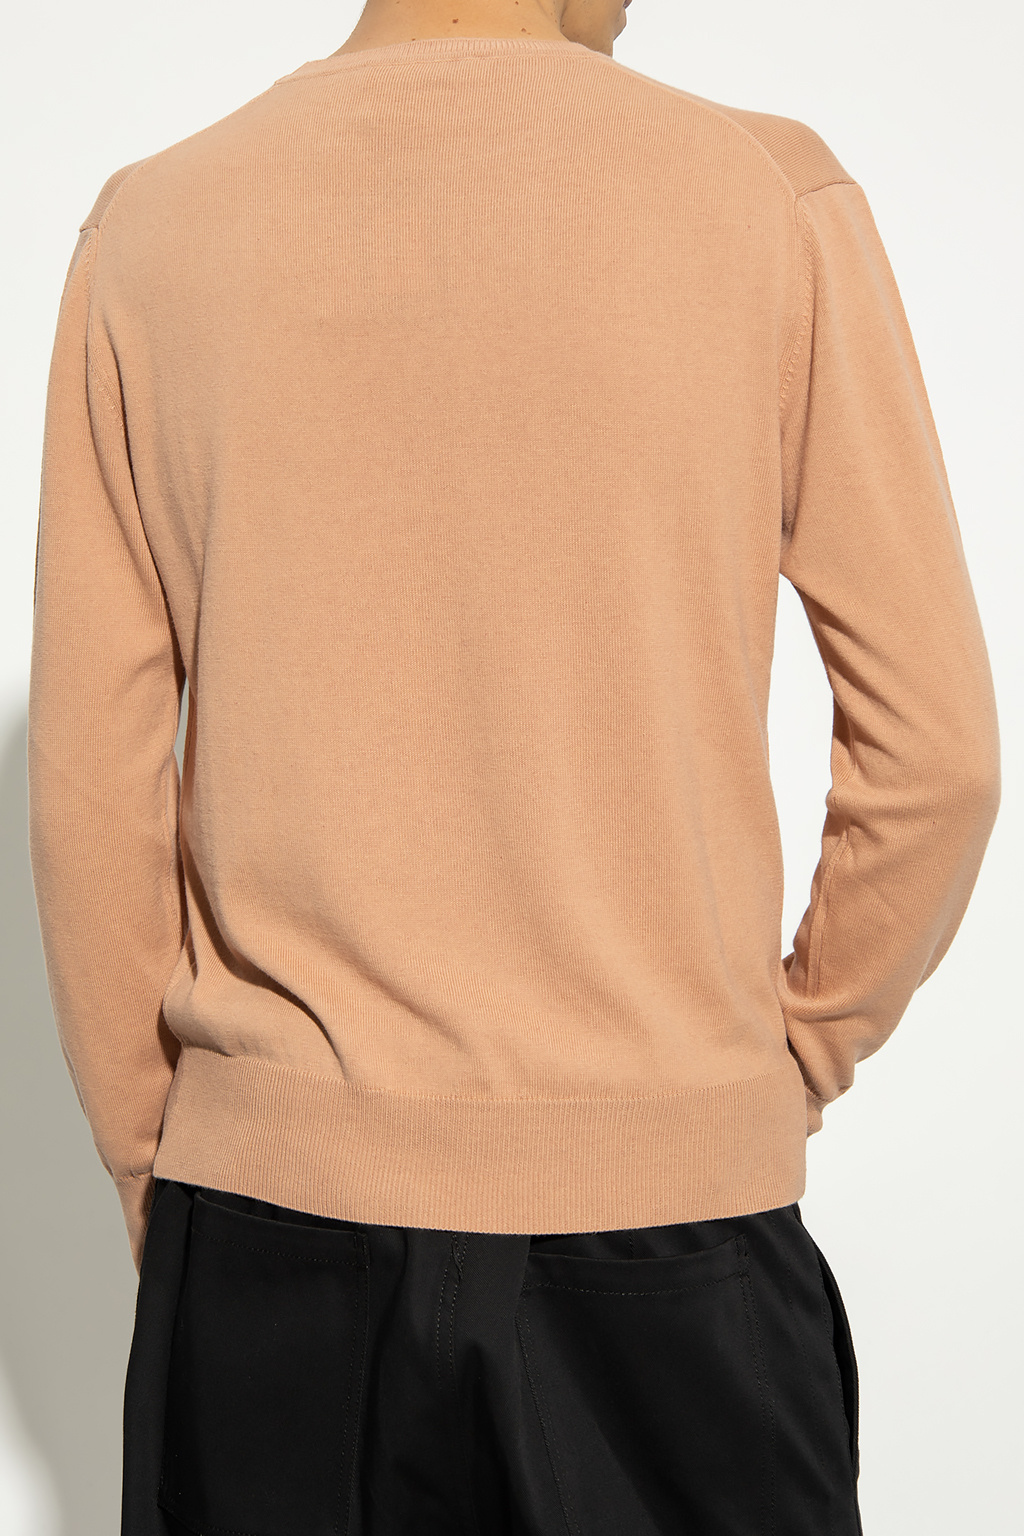 Vivienne Westwood printed hoodie undercover sweater dark brown